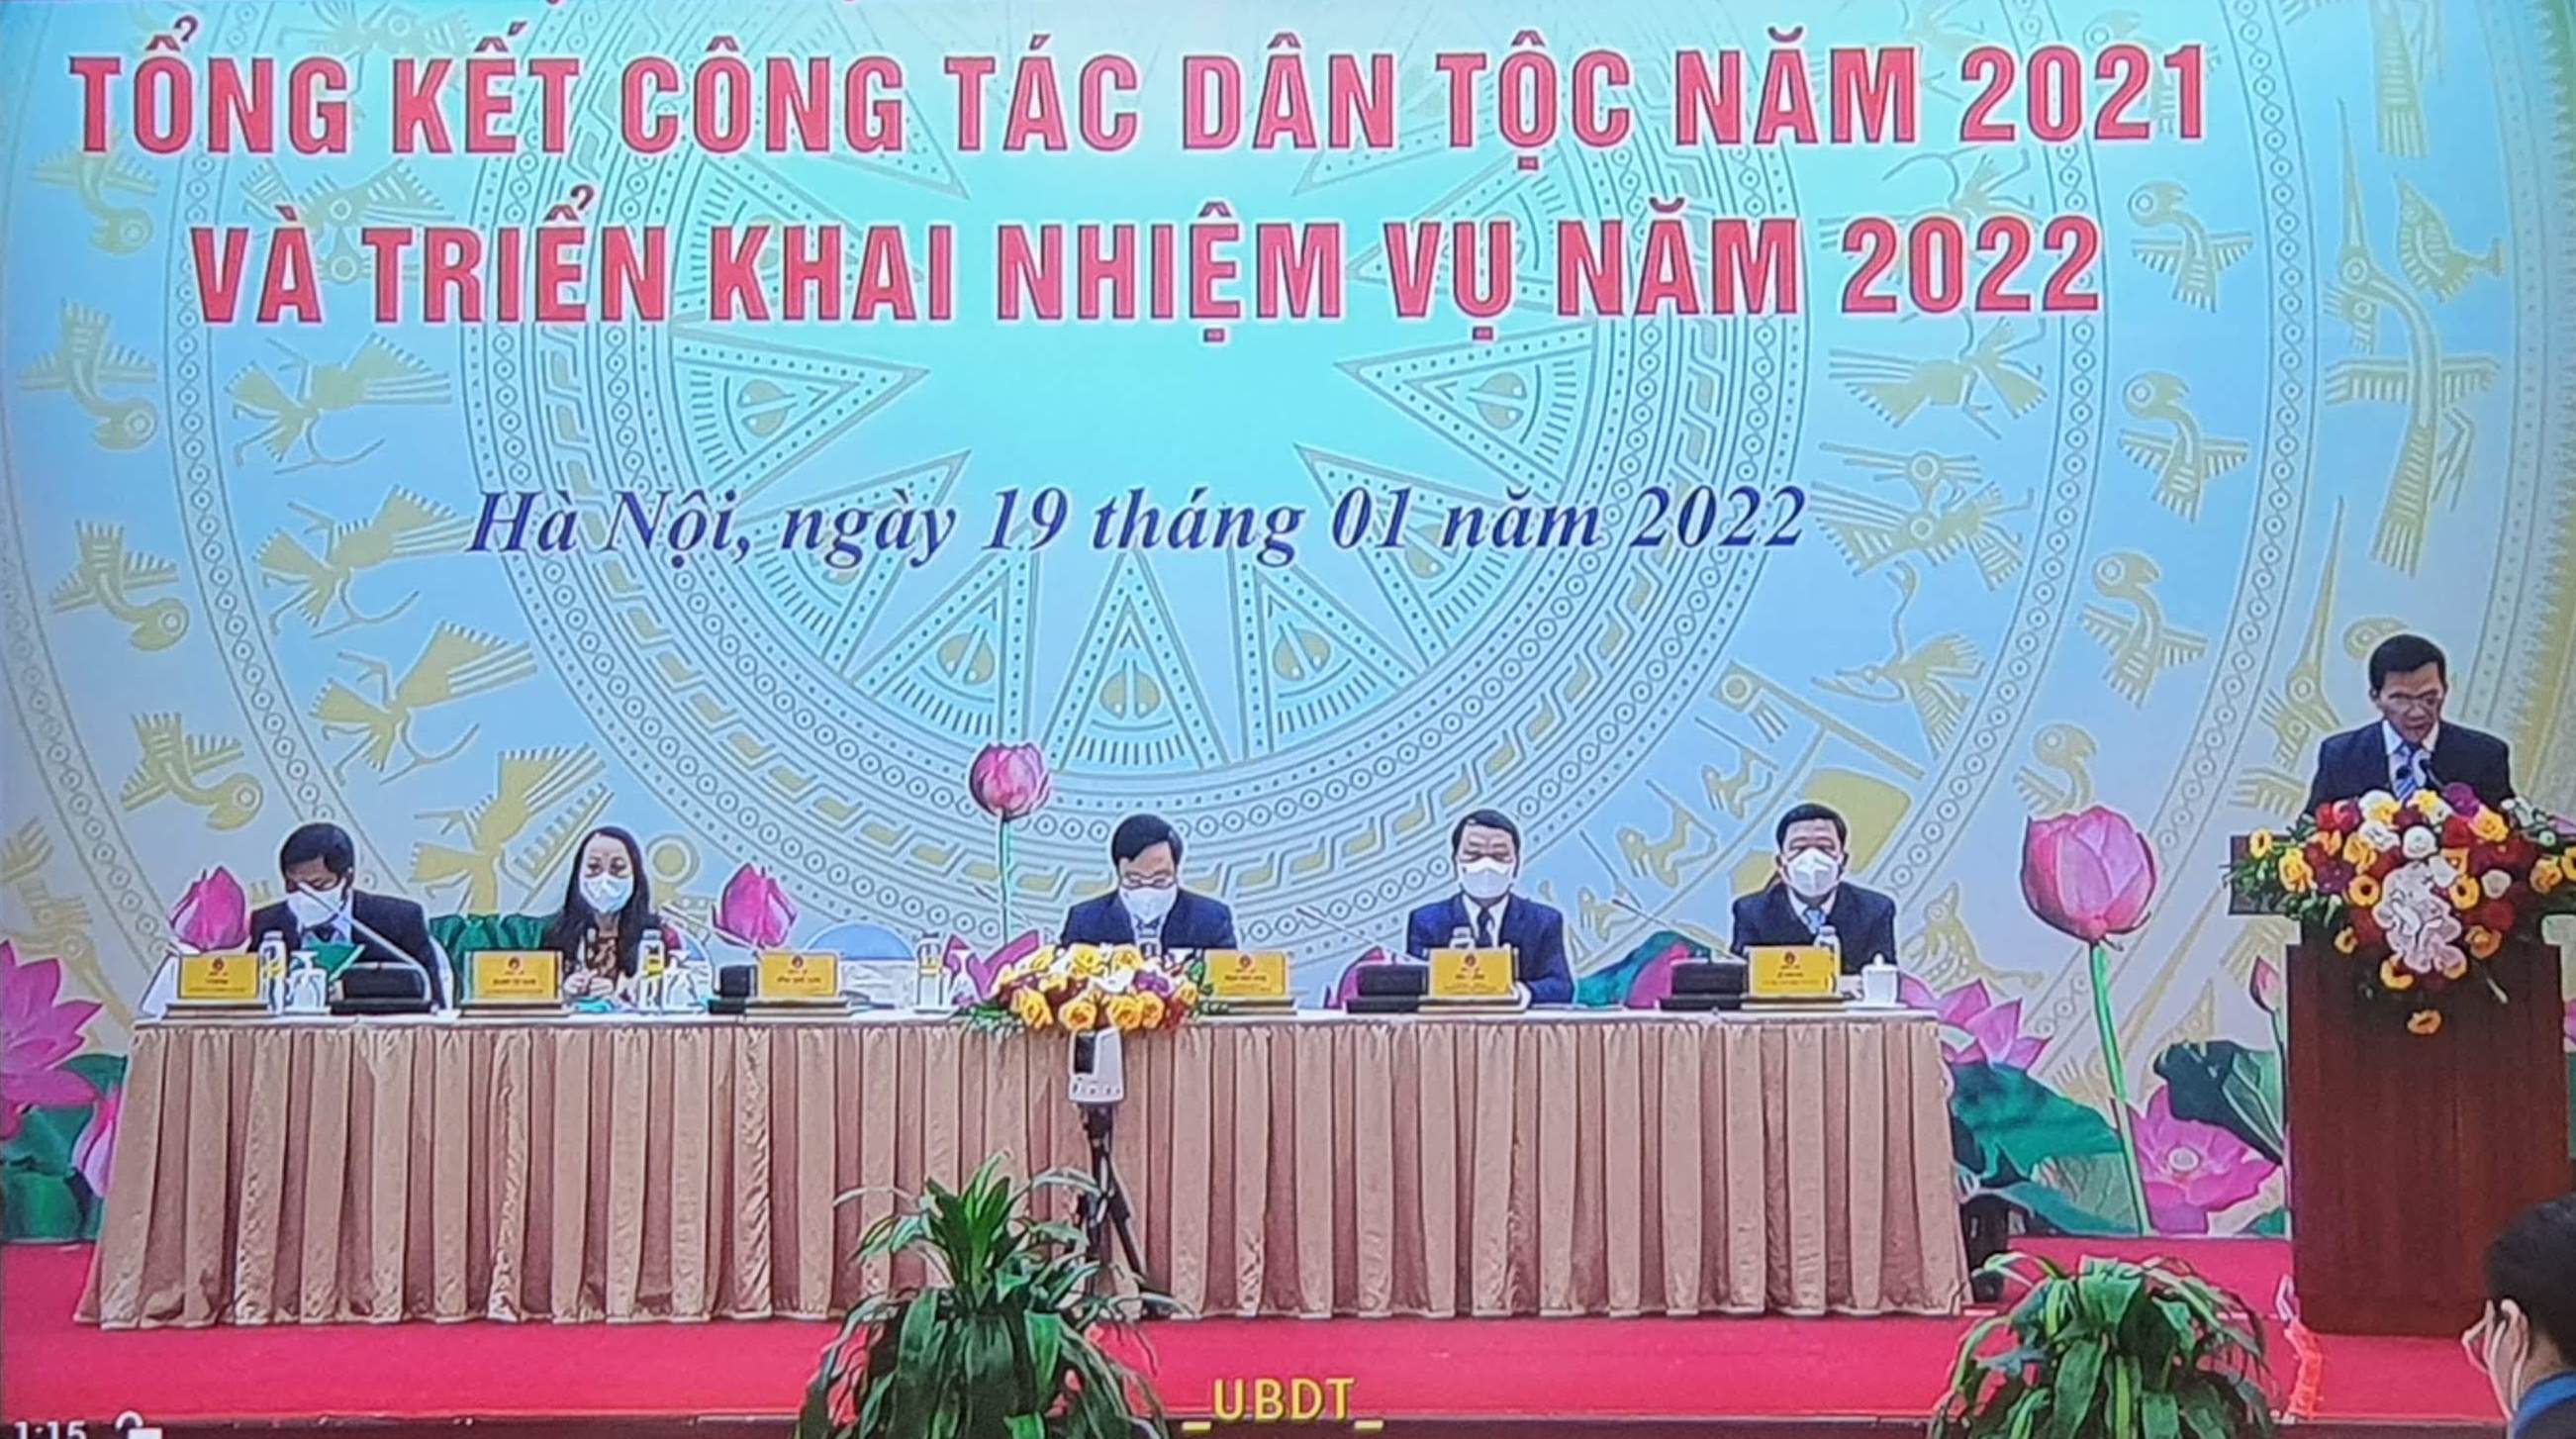 Hội nghị trực tuyến toàn quốc tổng kết công tác dân tộc năm 2021 và triển khai nhiệm vụ năm 2022